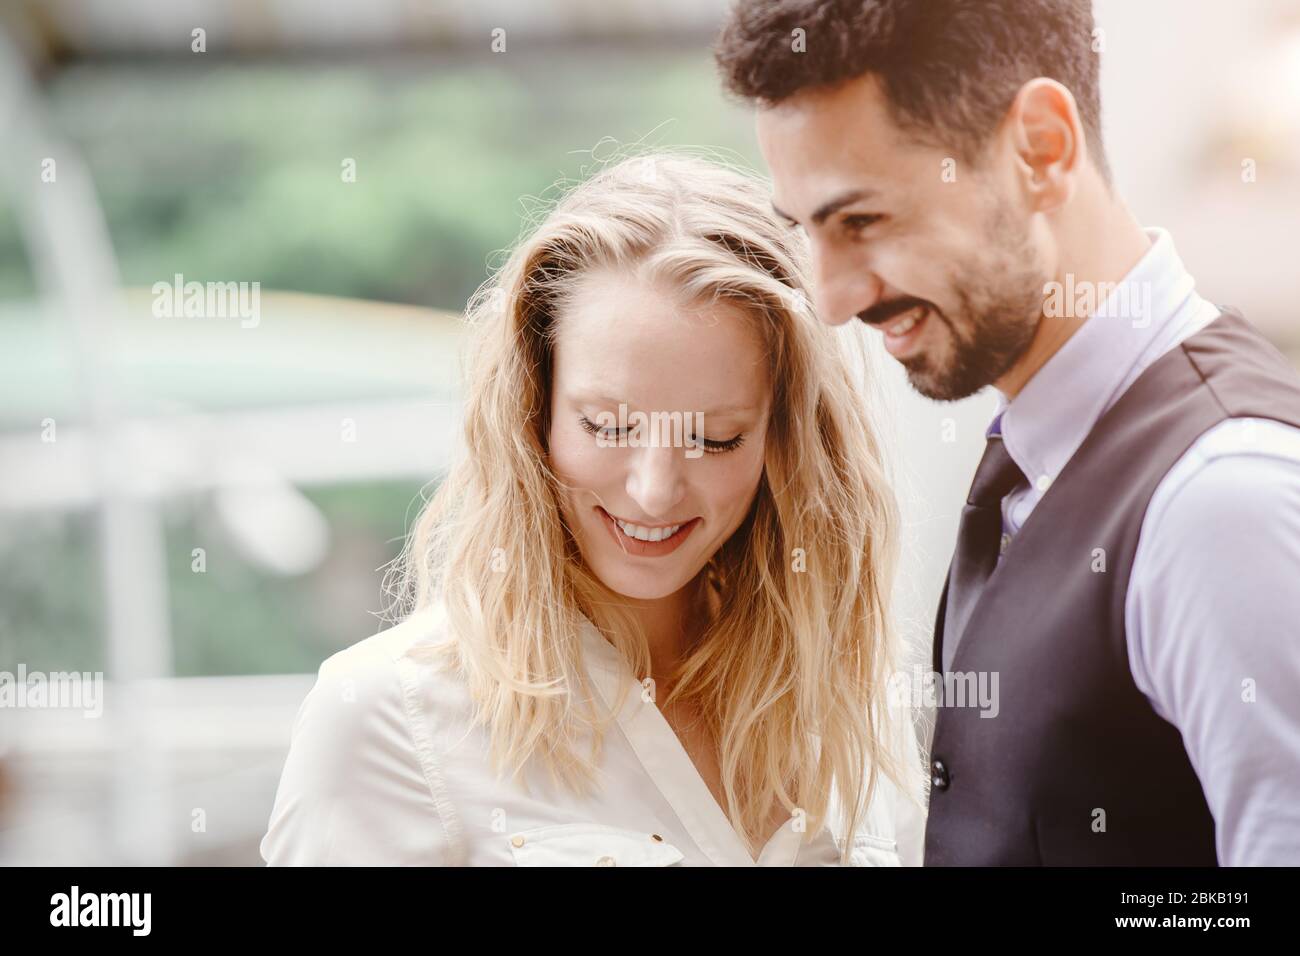 Gente de negocios adulto mezcla raza amante pareja o amigo feliz sonrisa al aire libre junto tímido. Foto de stock